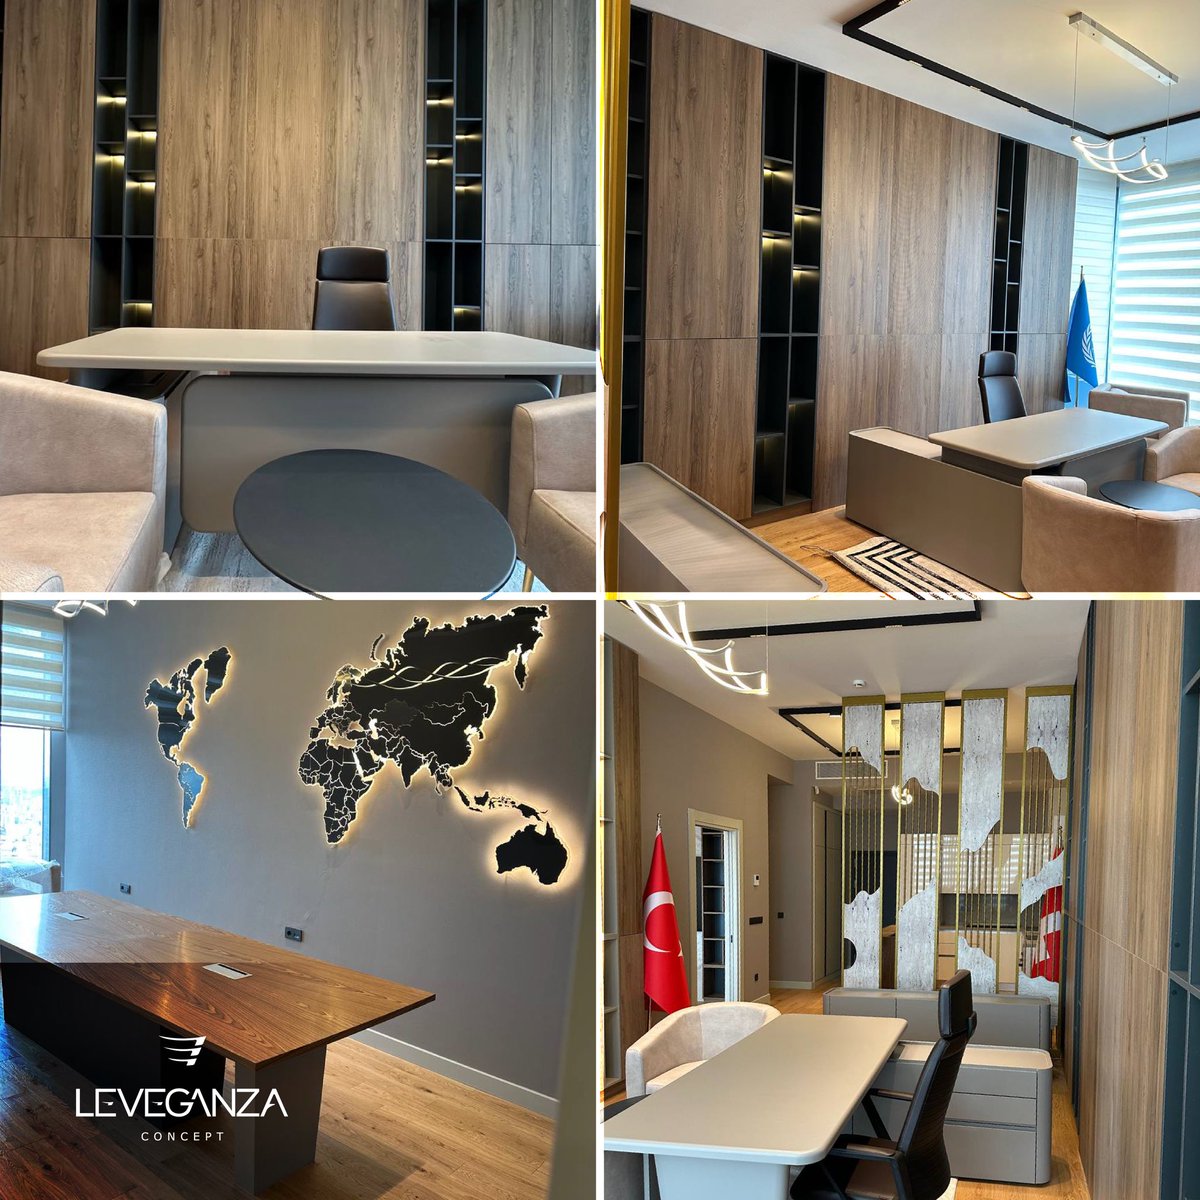 من تصميم وتنفيذ شركة ليڤجانزا للديكور والهندسة الداخلية⚜️ 📍Istanbul, Sinpaş Office Project Project Year : 2023 • 𝐋𝐄𝐕𝐄𝐆𝐀𝐍𝐙𝐀.. you Dream and we Design ⚜️ • #Leveganza #concept #interiordesign #decor #design #interior #villa #luxury #istanbul